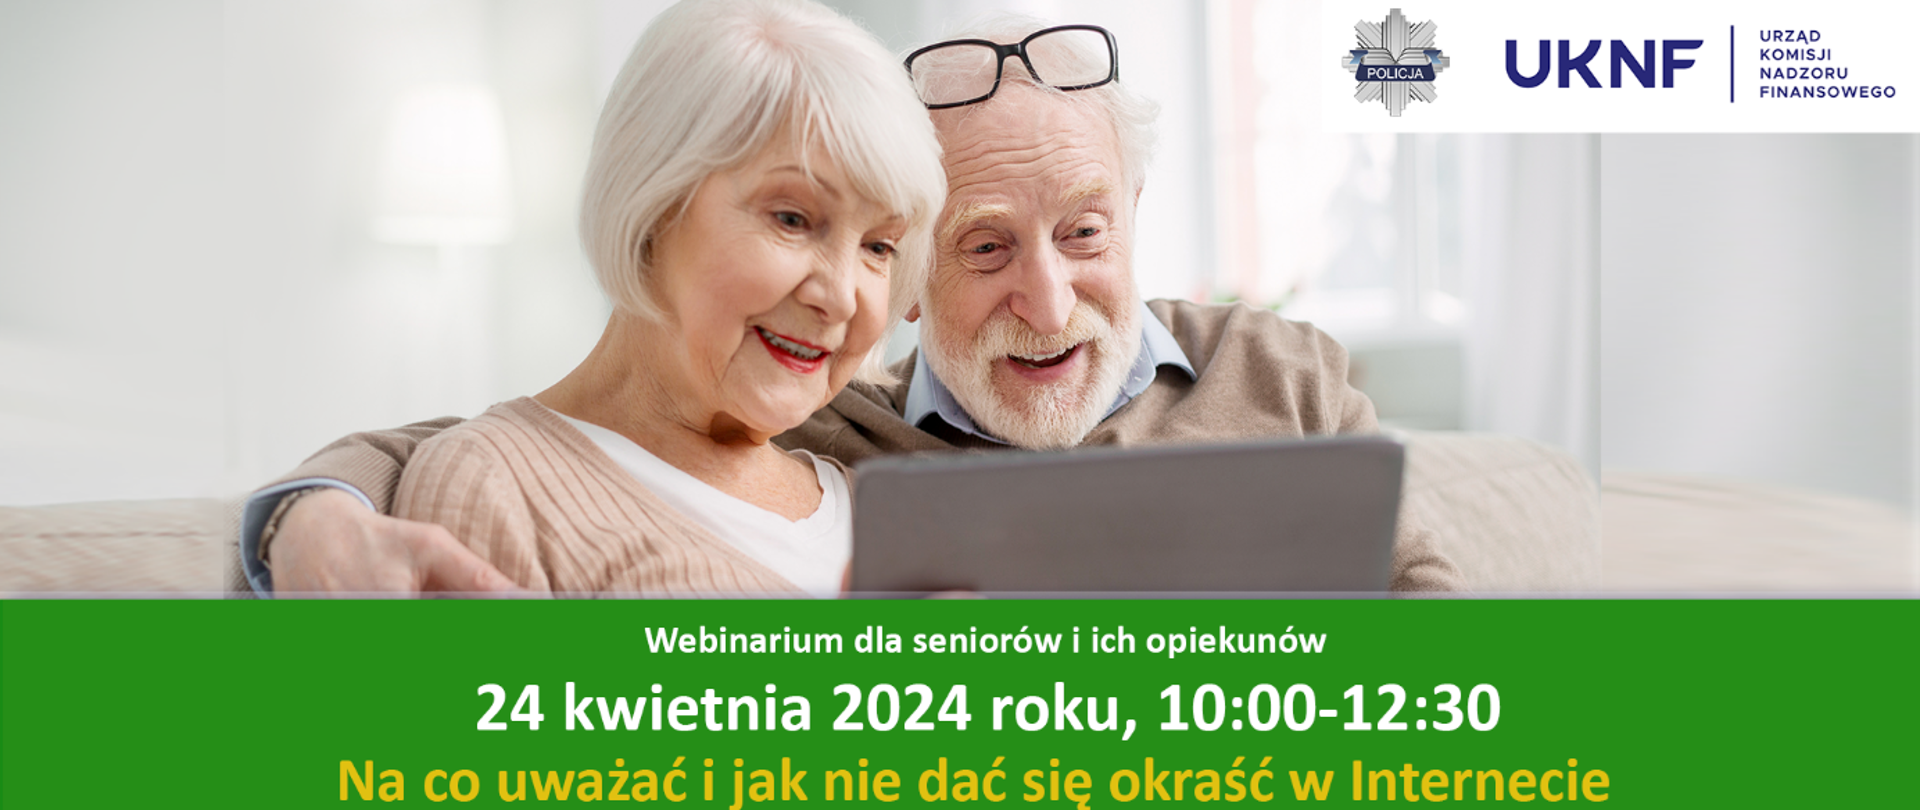 Uśmiechnięci seniorzy - mężczyzna i kobieta - siedzą na sofie i spoglądają w ekran tabletu